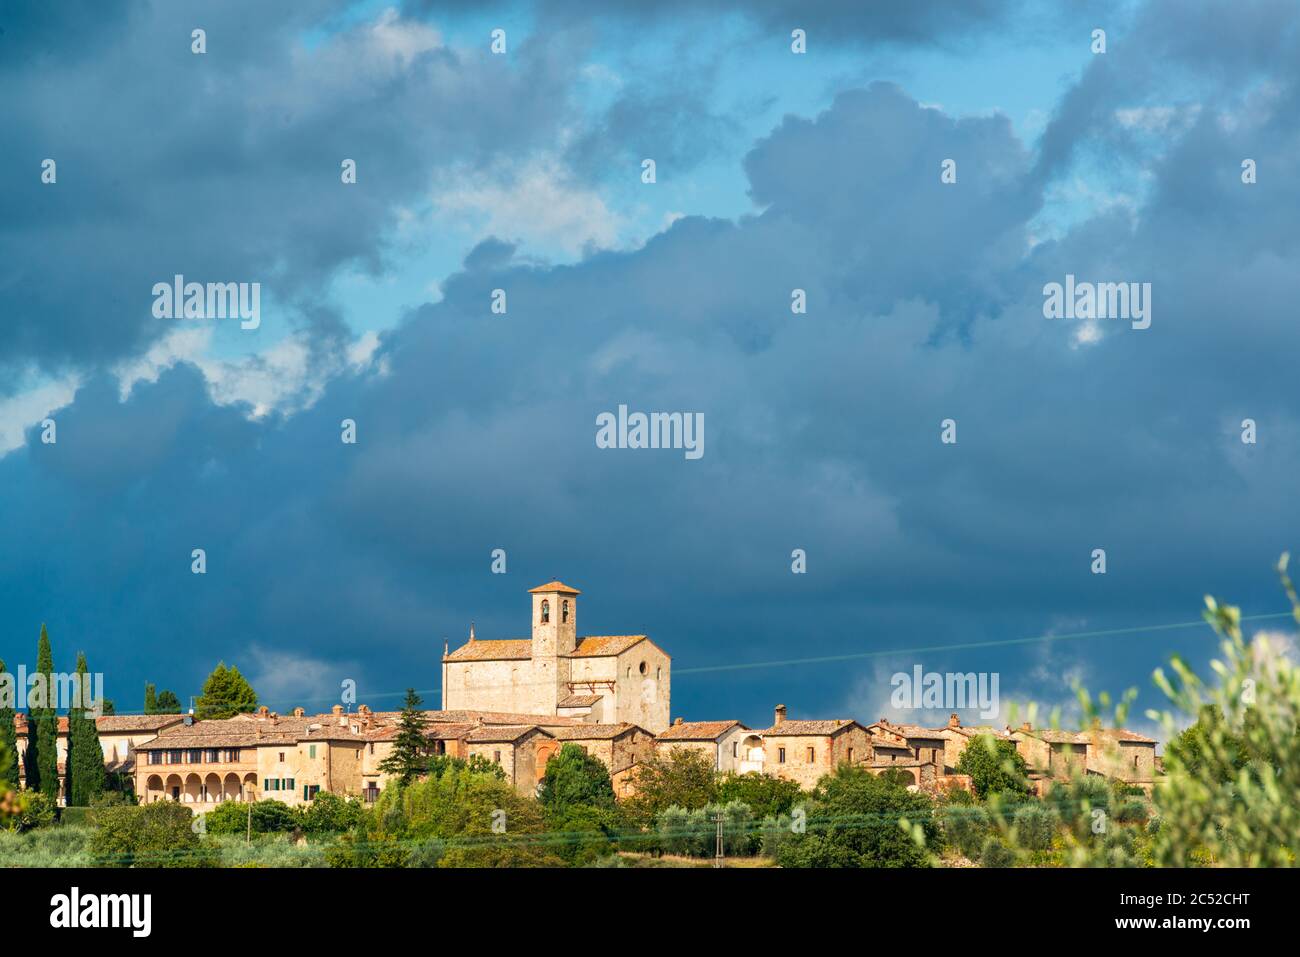 Auf einem Hügel nahe Siena befindet sich die Certosa di Pontignano, ein ehemaliges Kloster, heute als Gästehaus der Universität Siena Stockfoto